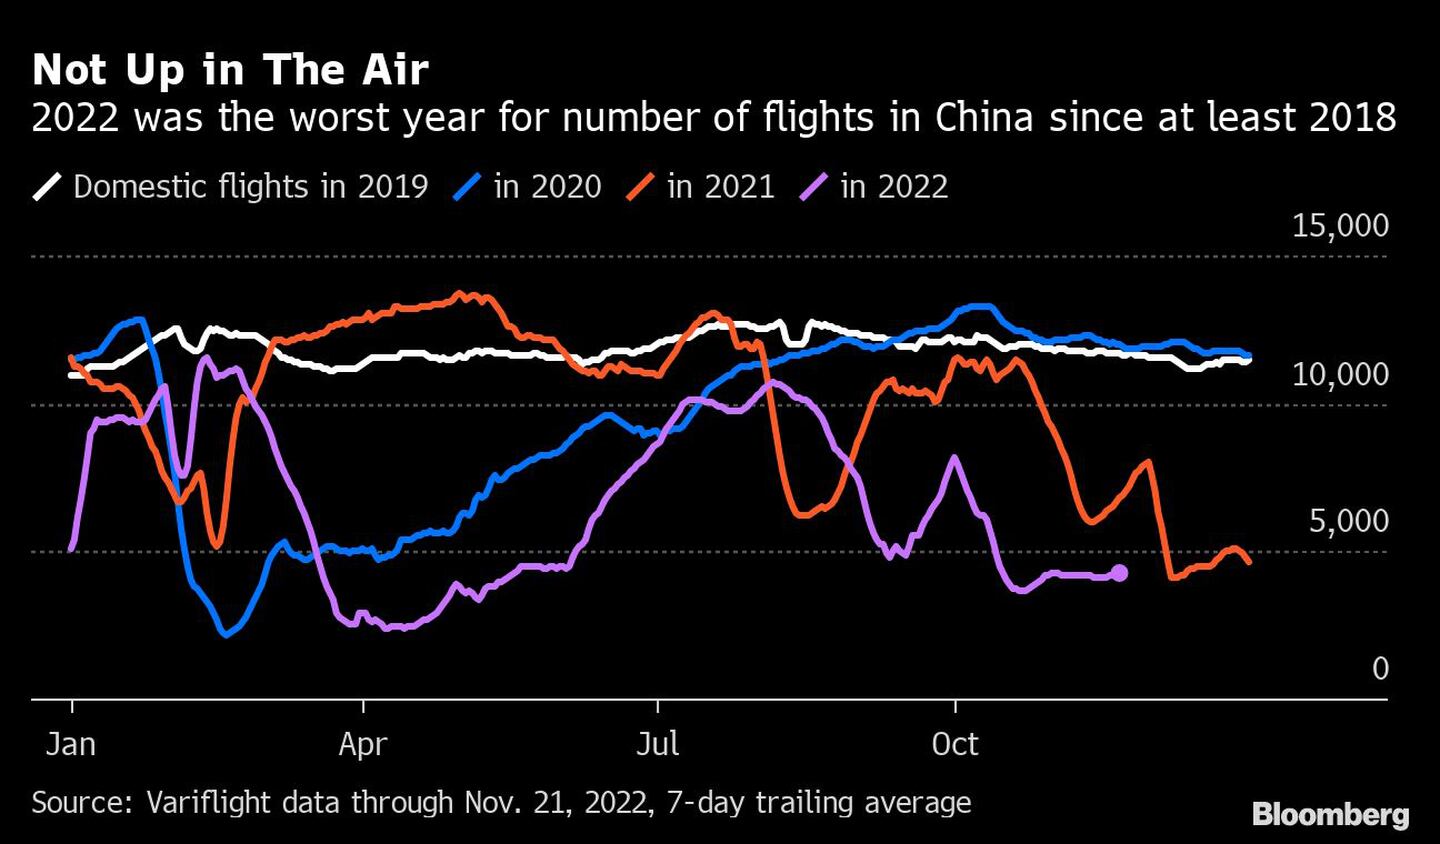 El 2022 fue el peor año en número de vuelos en China desde al menos 2018.dfd